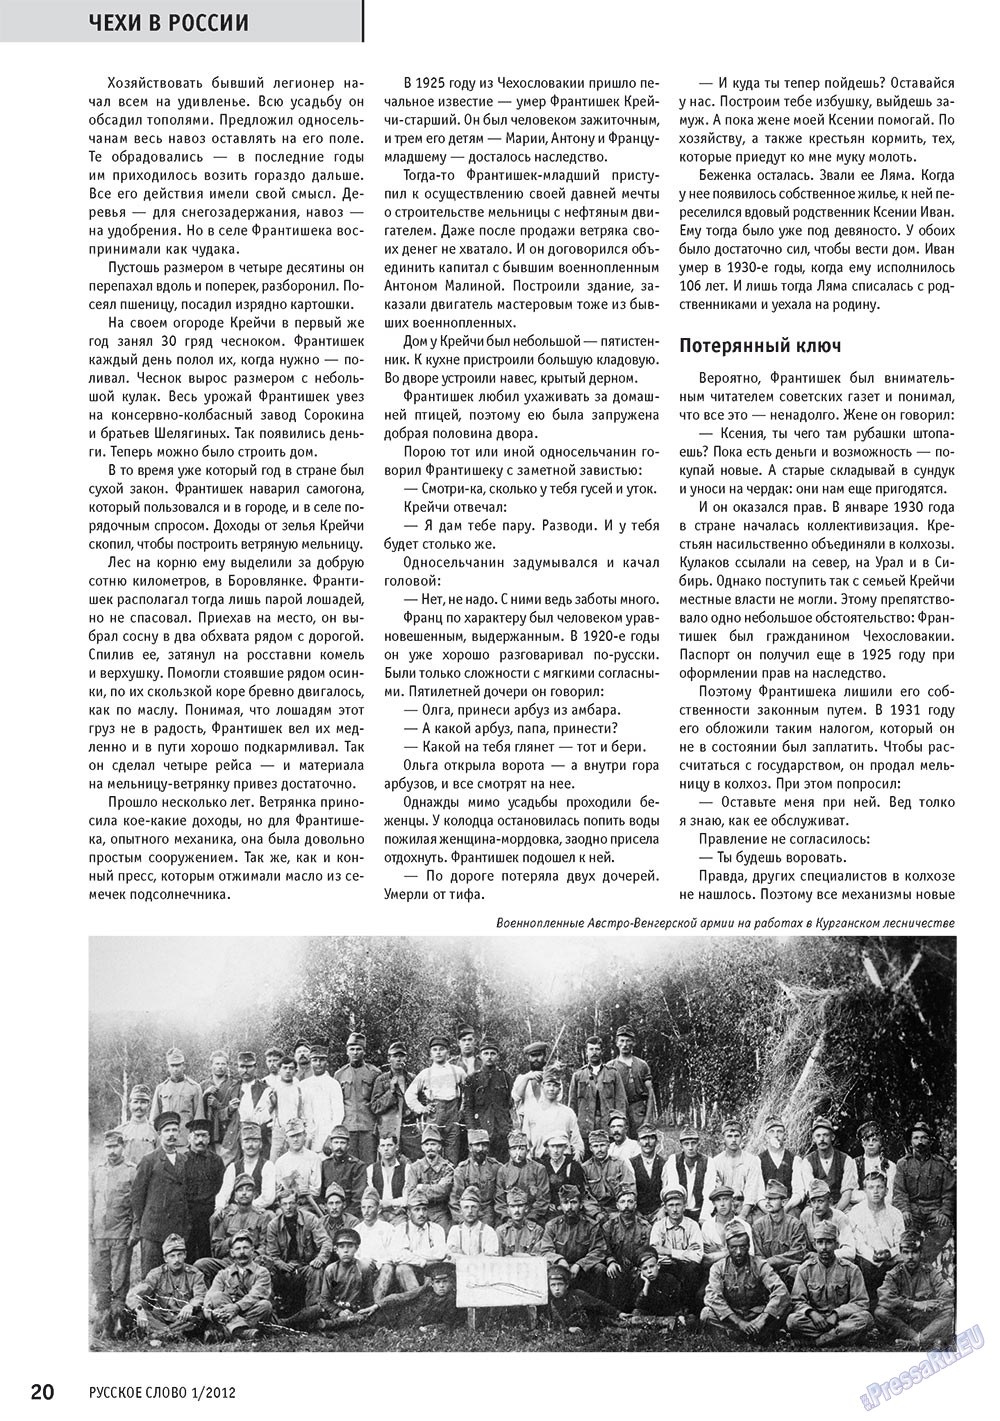 Русское слово, журнал. 2012 №1 стр.22